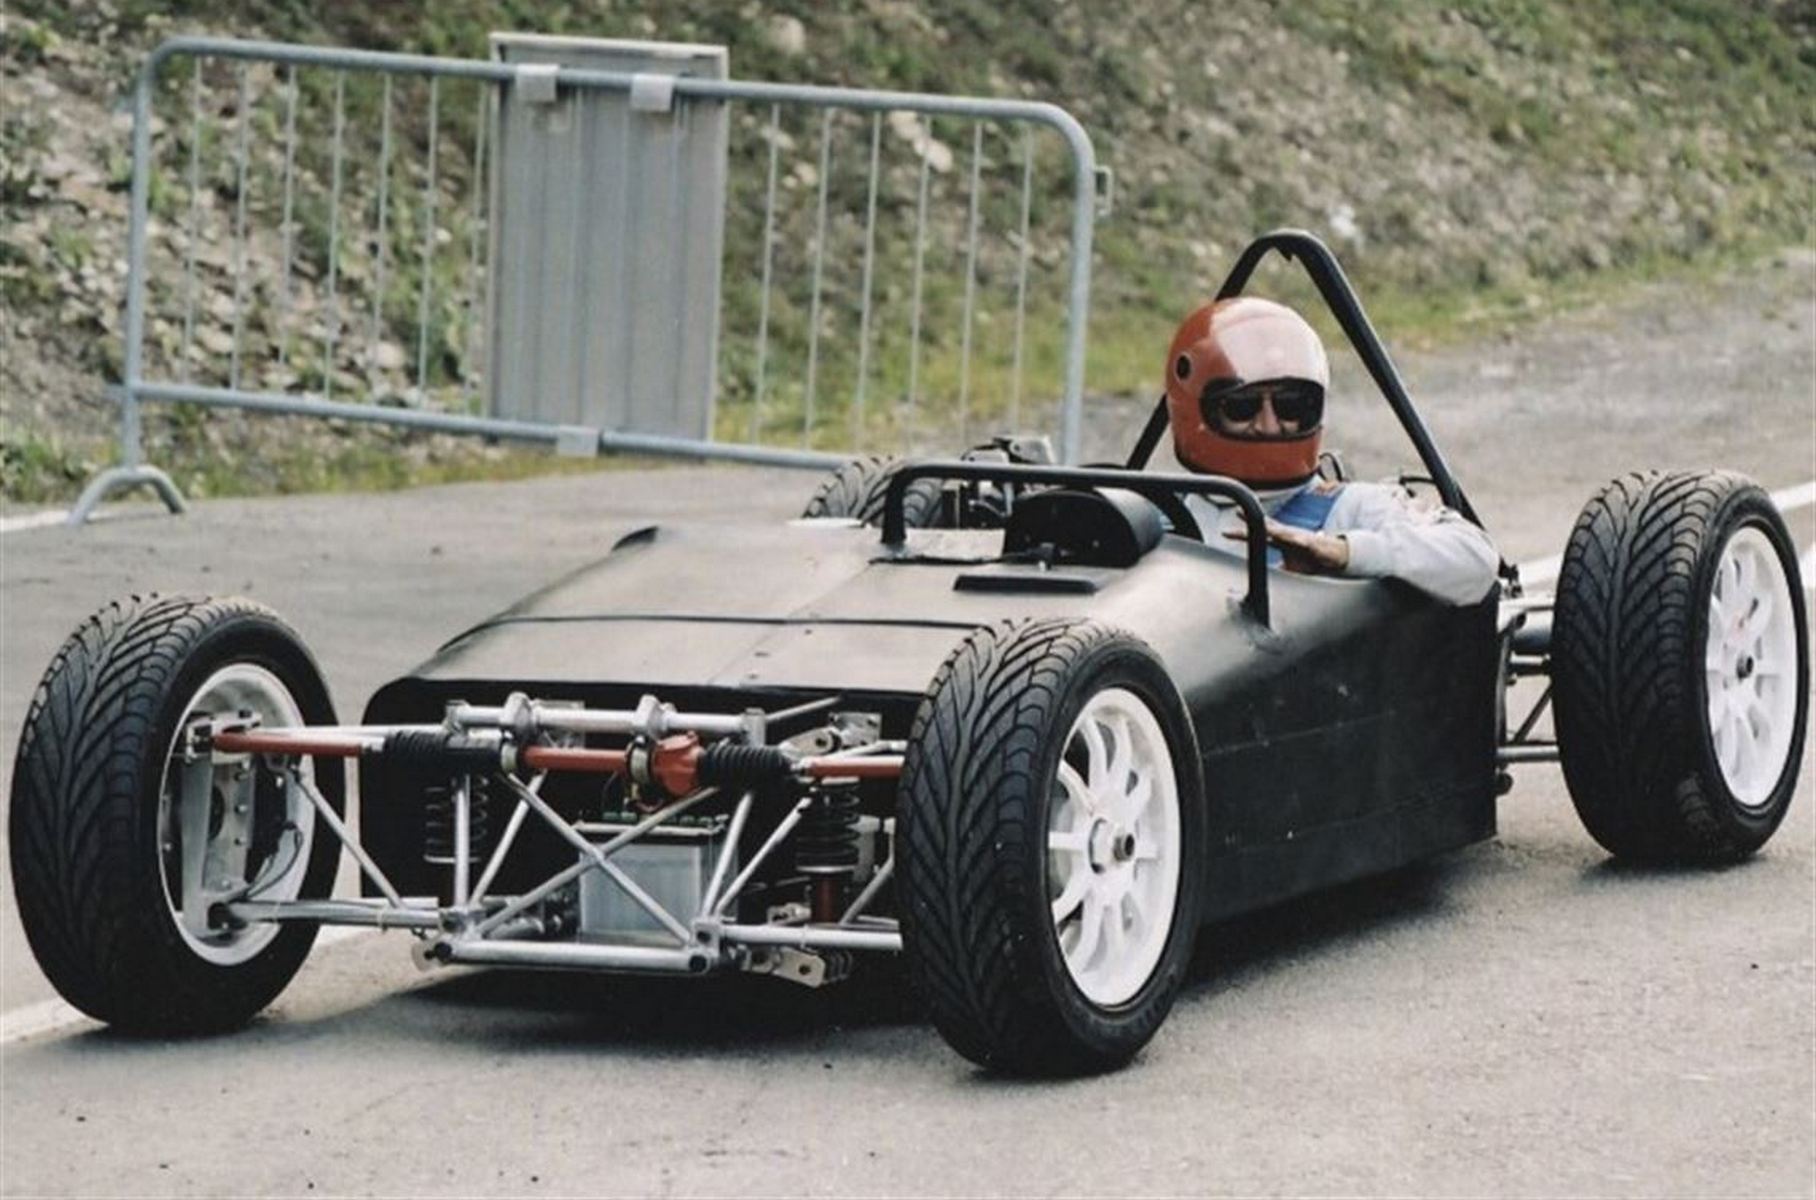 В начале двухтысячных Биззаррини занимался проектом сверхлёгкого спорткара Bebi Quercianella для шведского бизнесмена Класа Мюллера. На фото с тестов — ранняя версия машины, к тому же без оперения. Благодаря этому видно углепластиковый монокок. За рулём — сам конструктор.